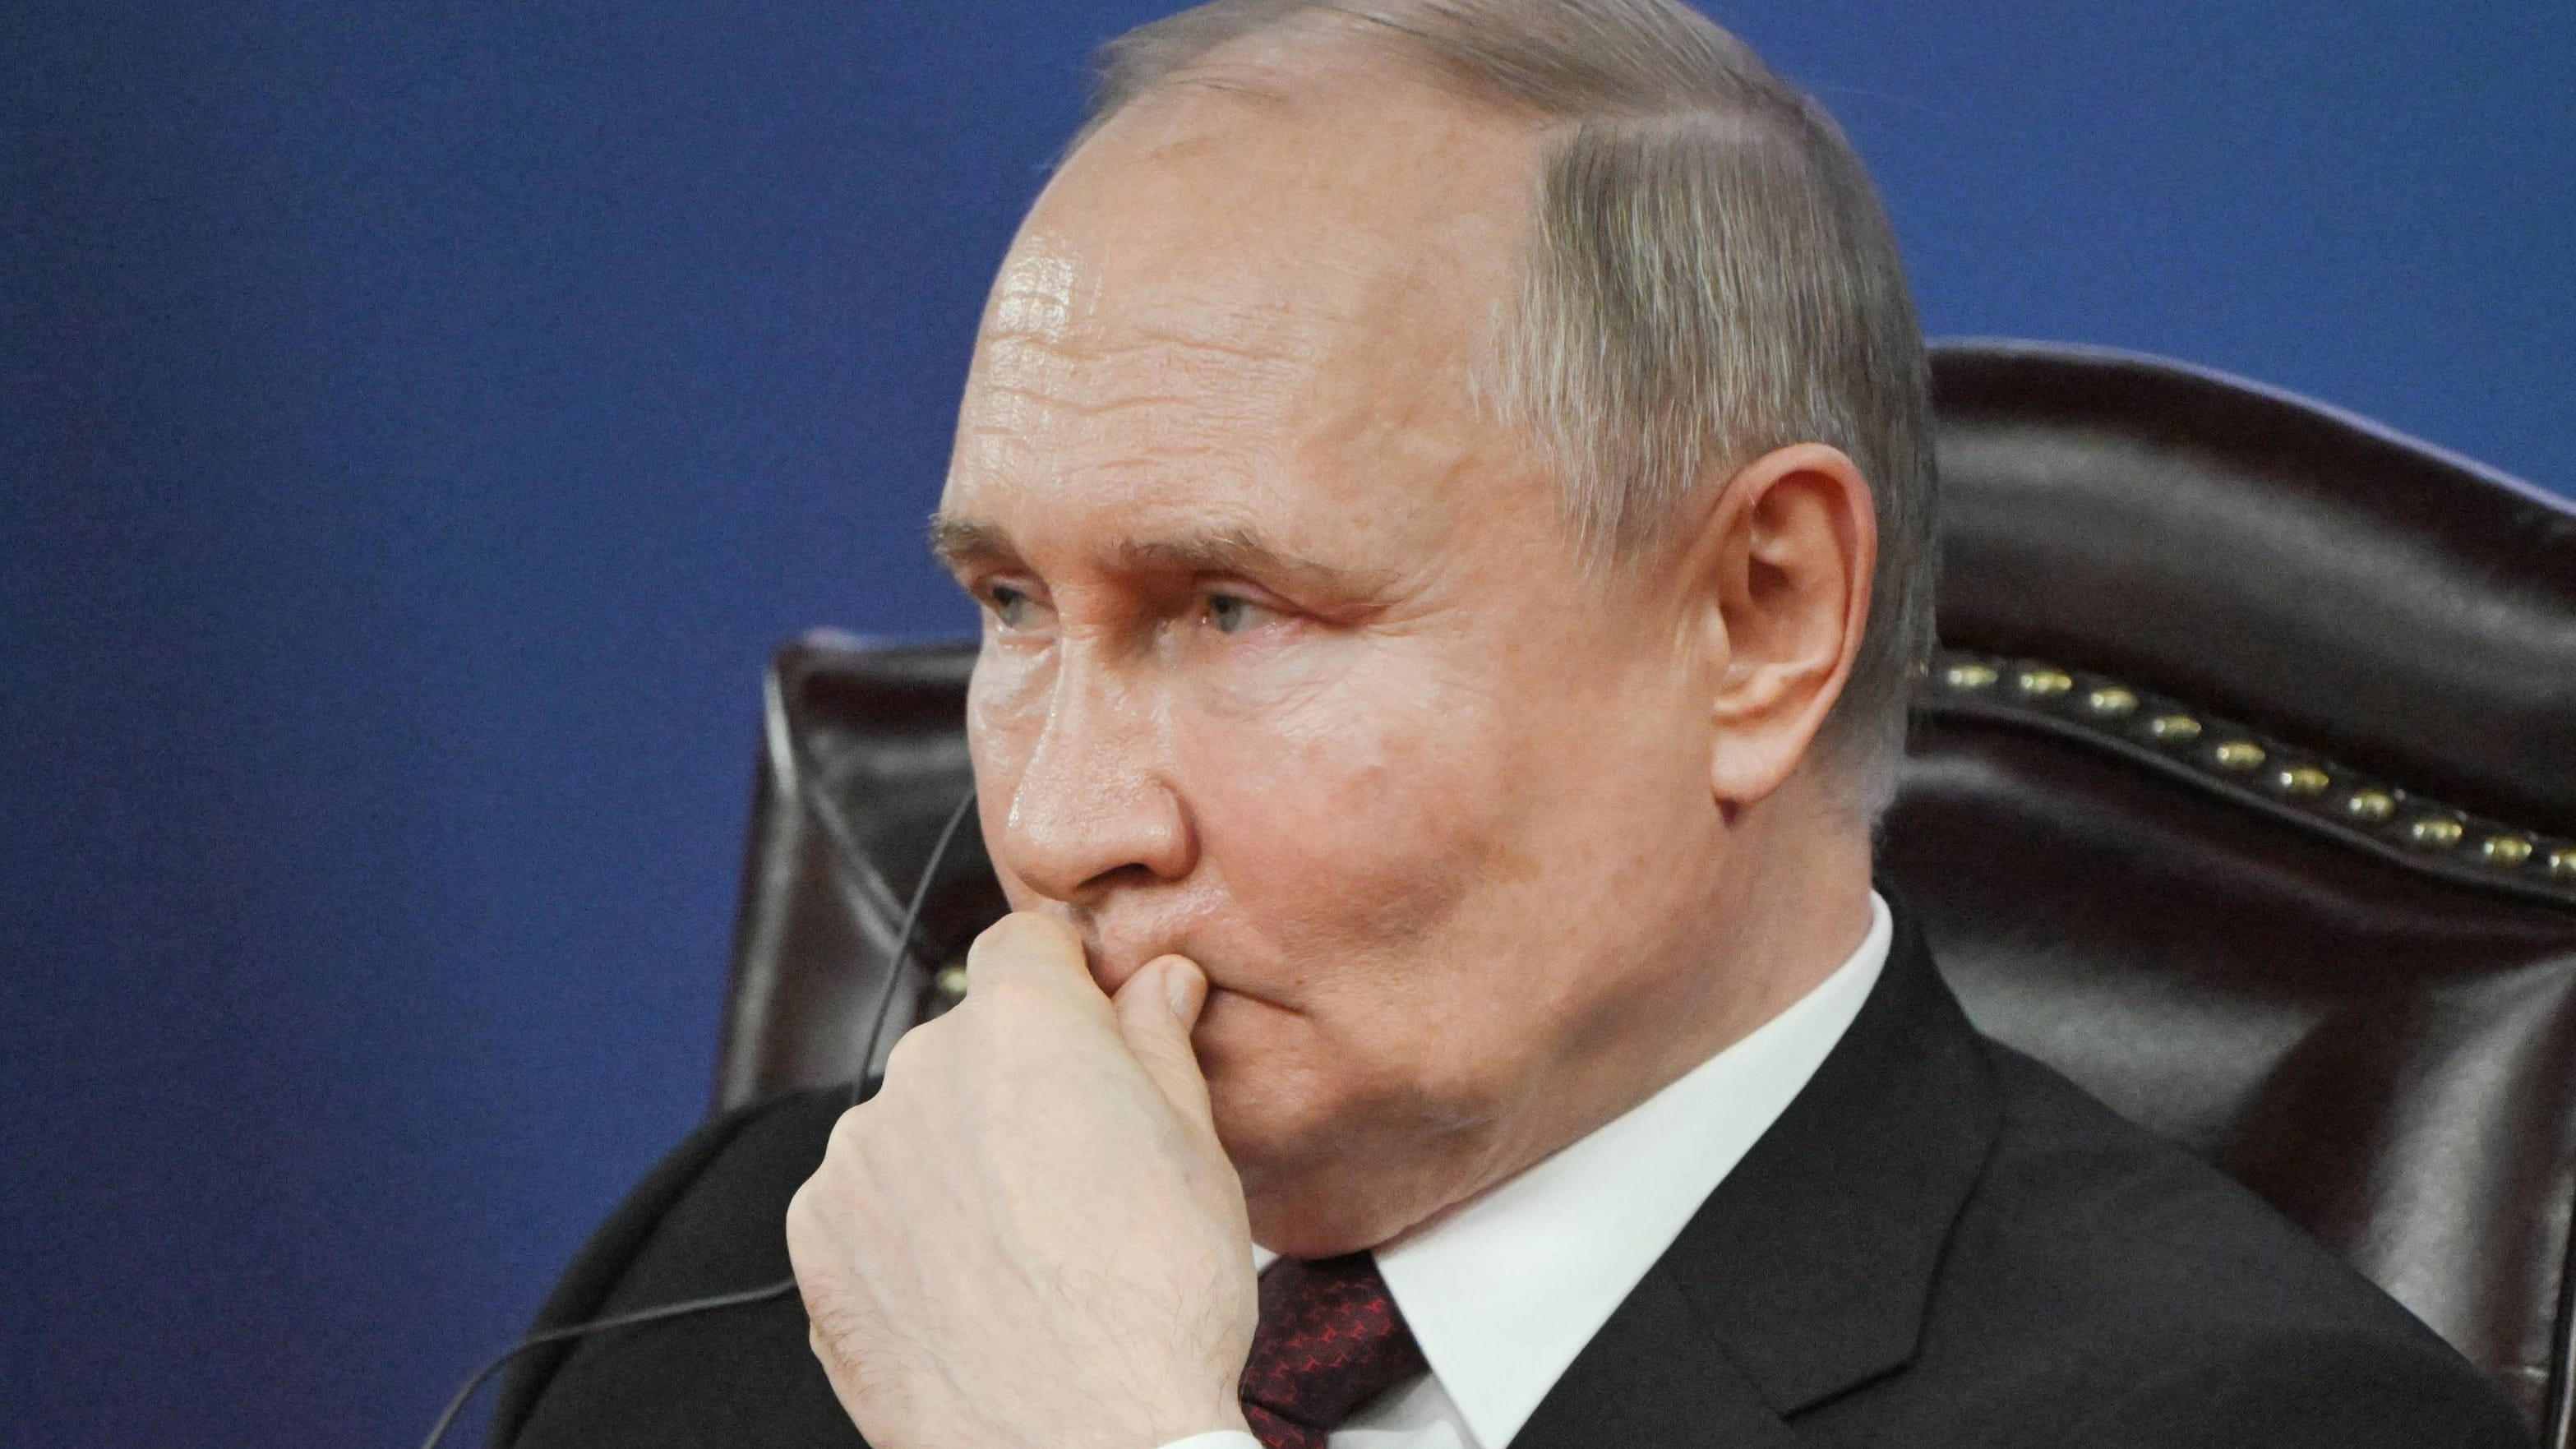 Russland: Putin setzt neue Regierung ein – alles auf Kriegswirtschaft